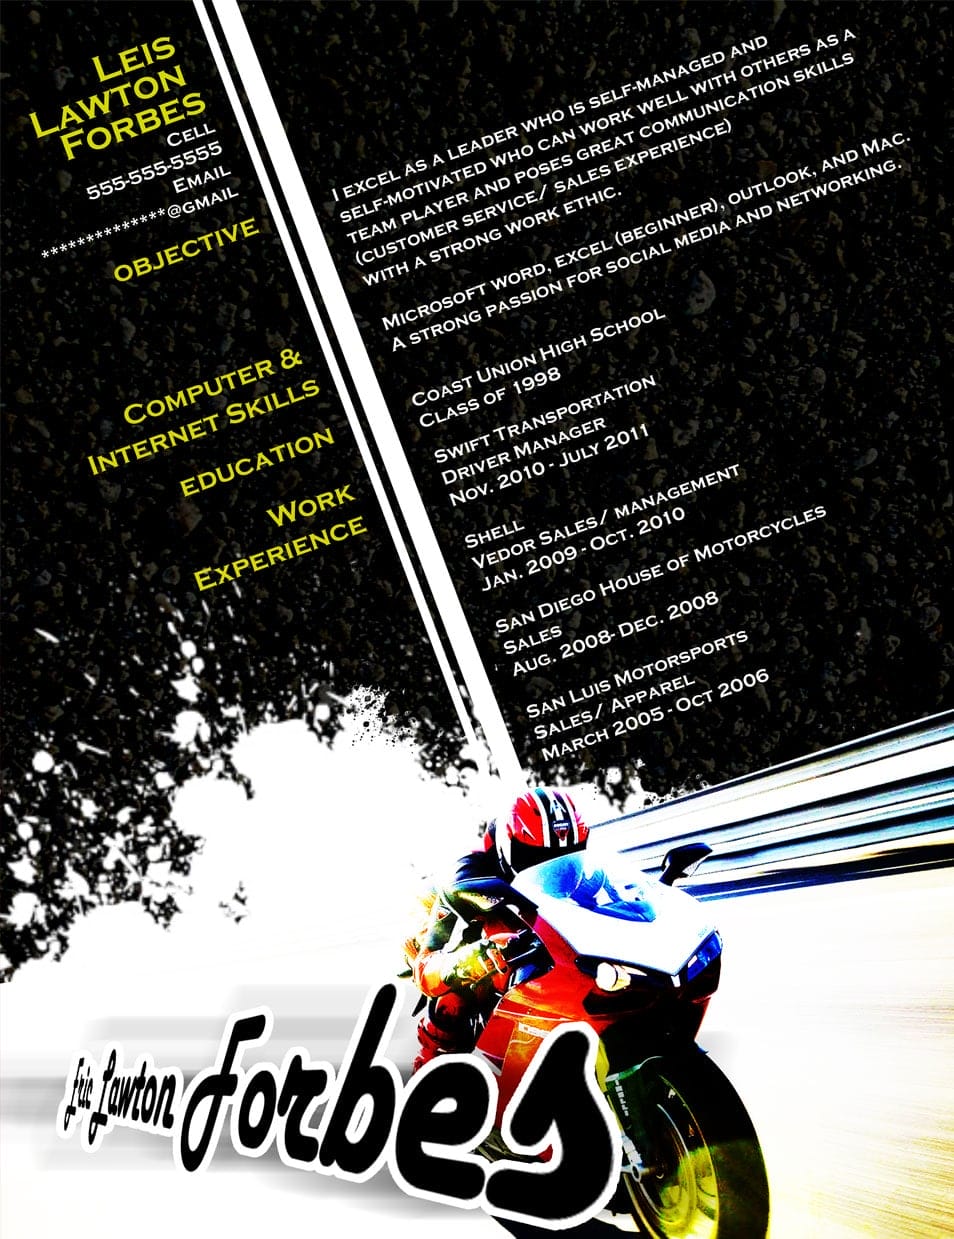 Resume - Motorcycle